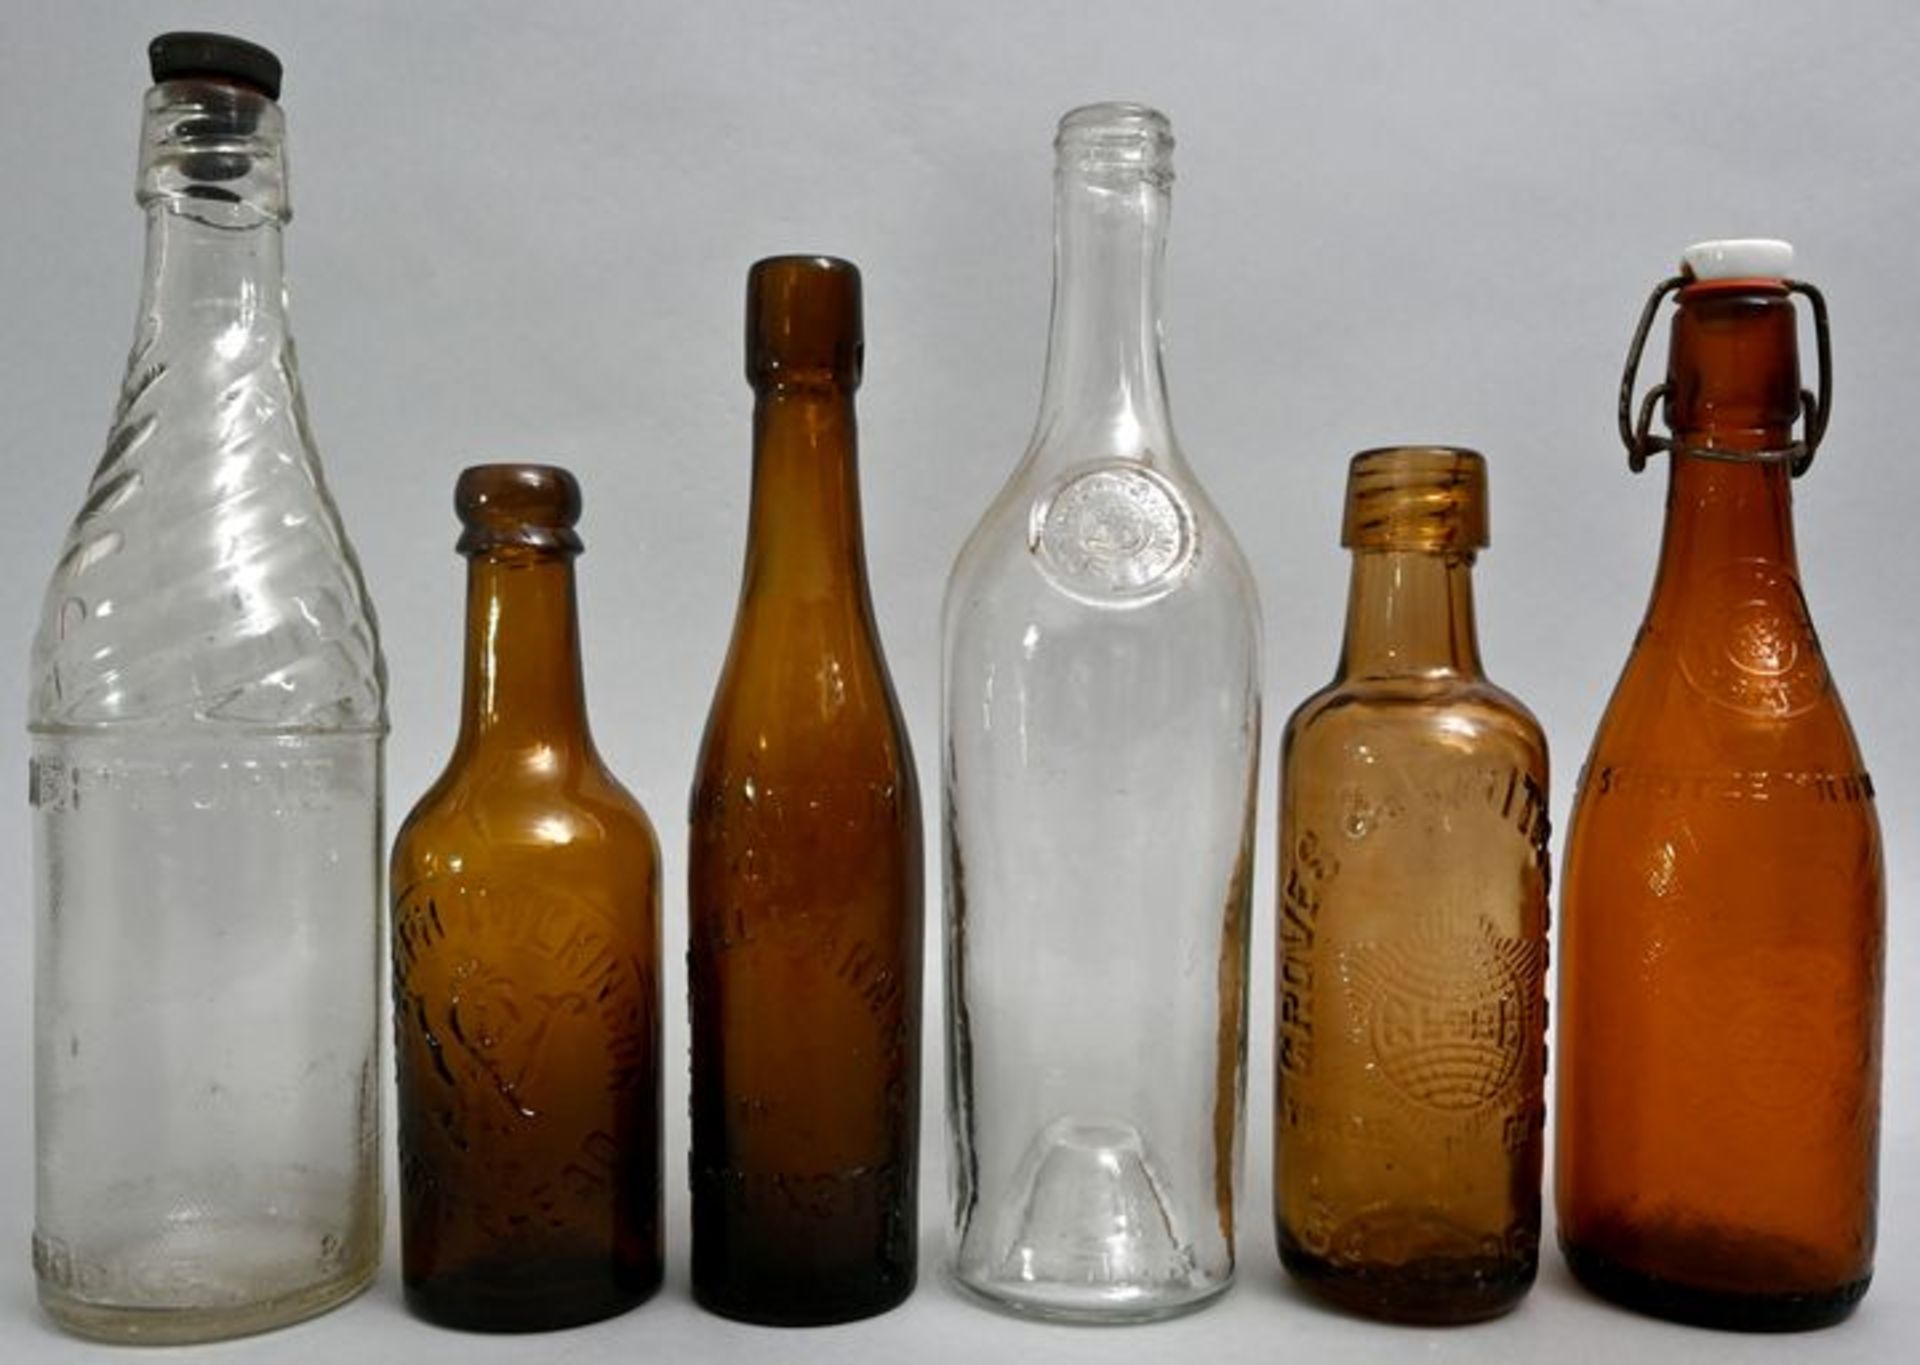 Konvolut von sechs Flaschen / Set of six bottles